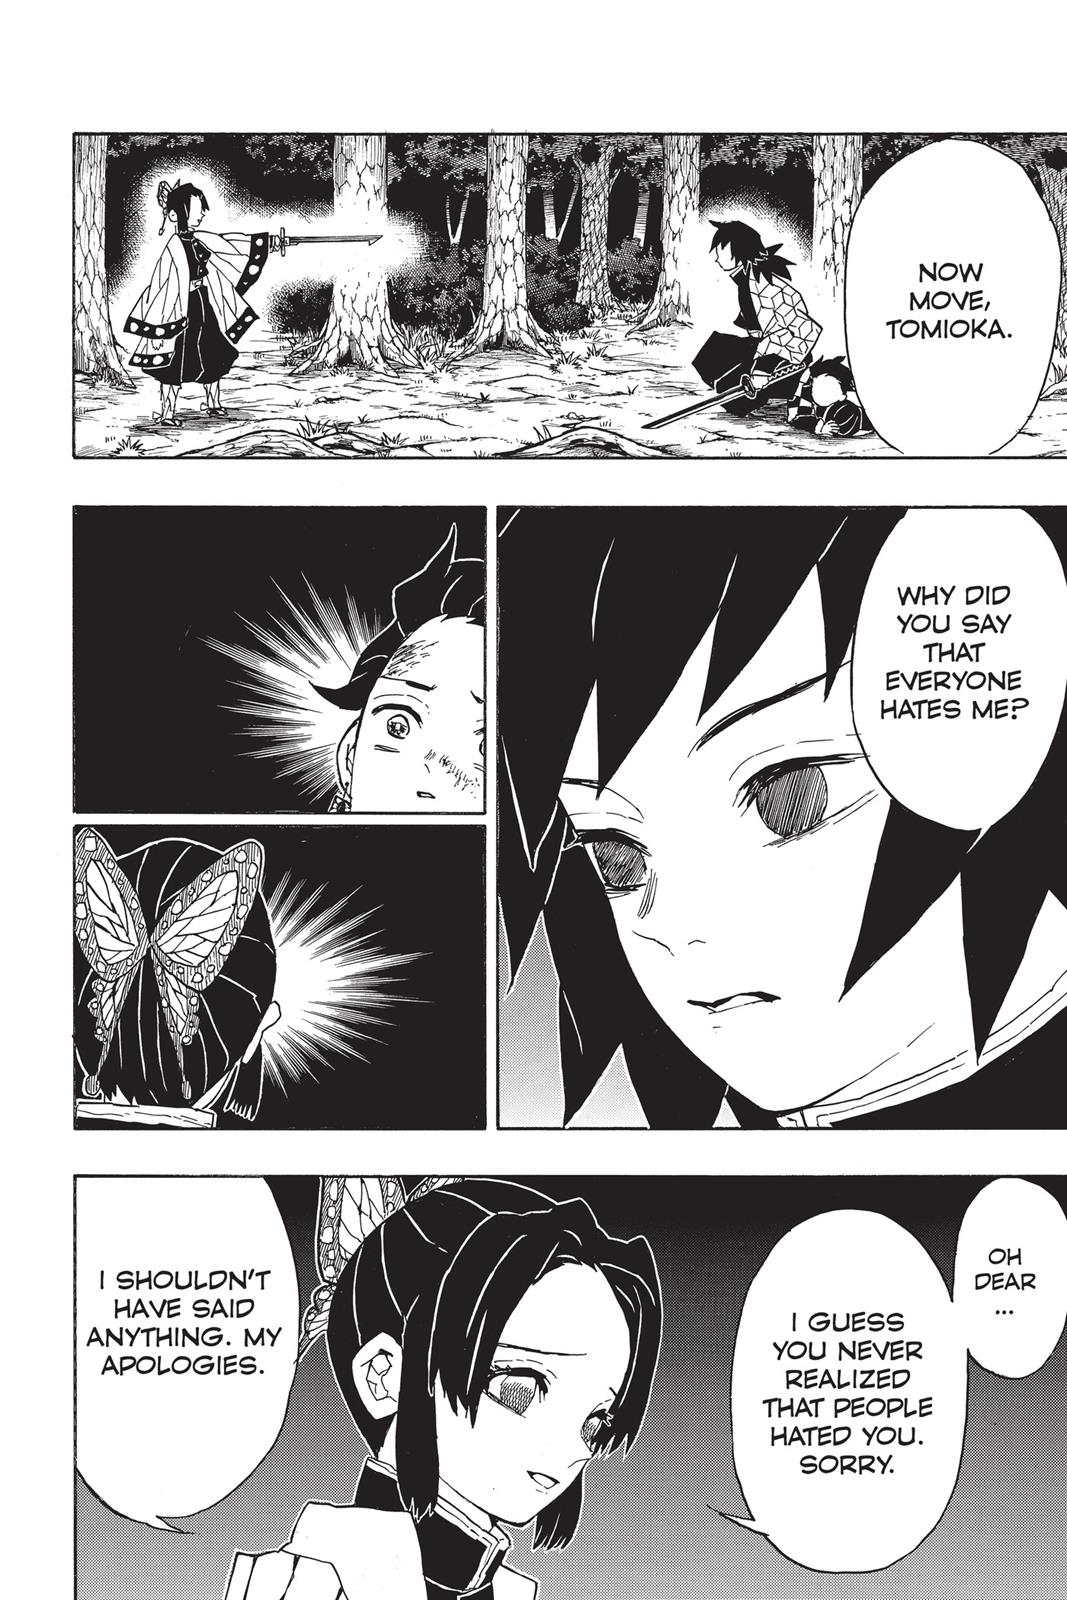 Demon Slayer Manga Manga Chapter - 44 - image 1